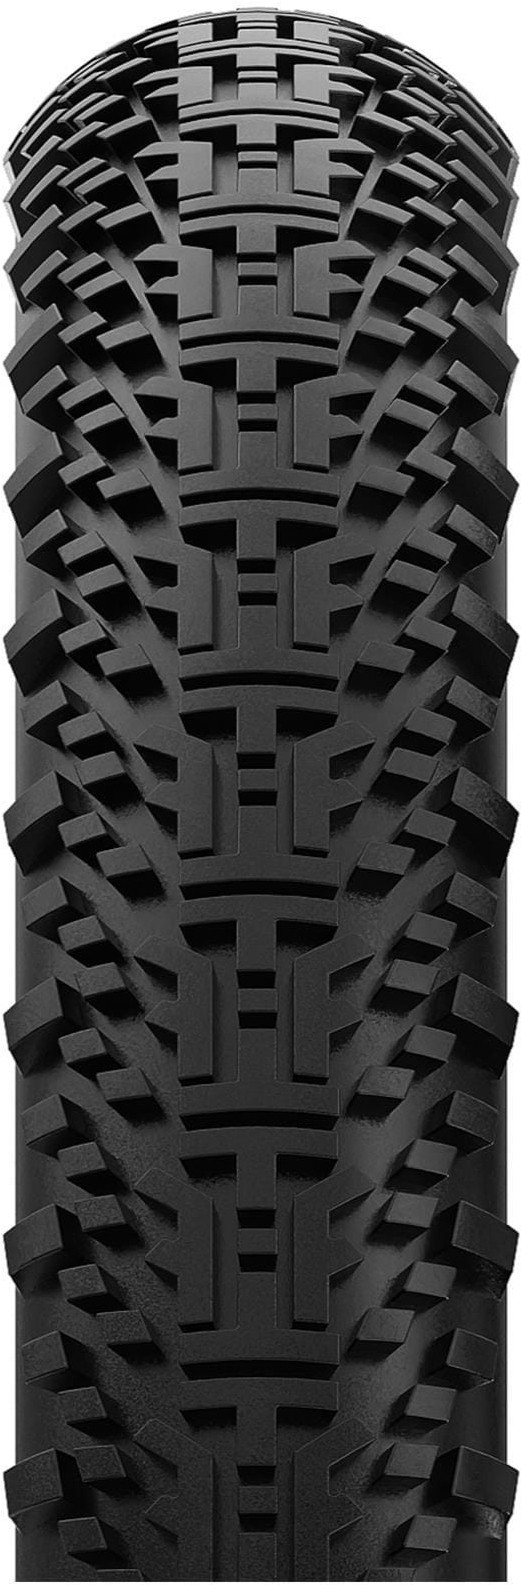 Gravelking X1 TLR 700c Gravel Tyre image 1